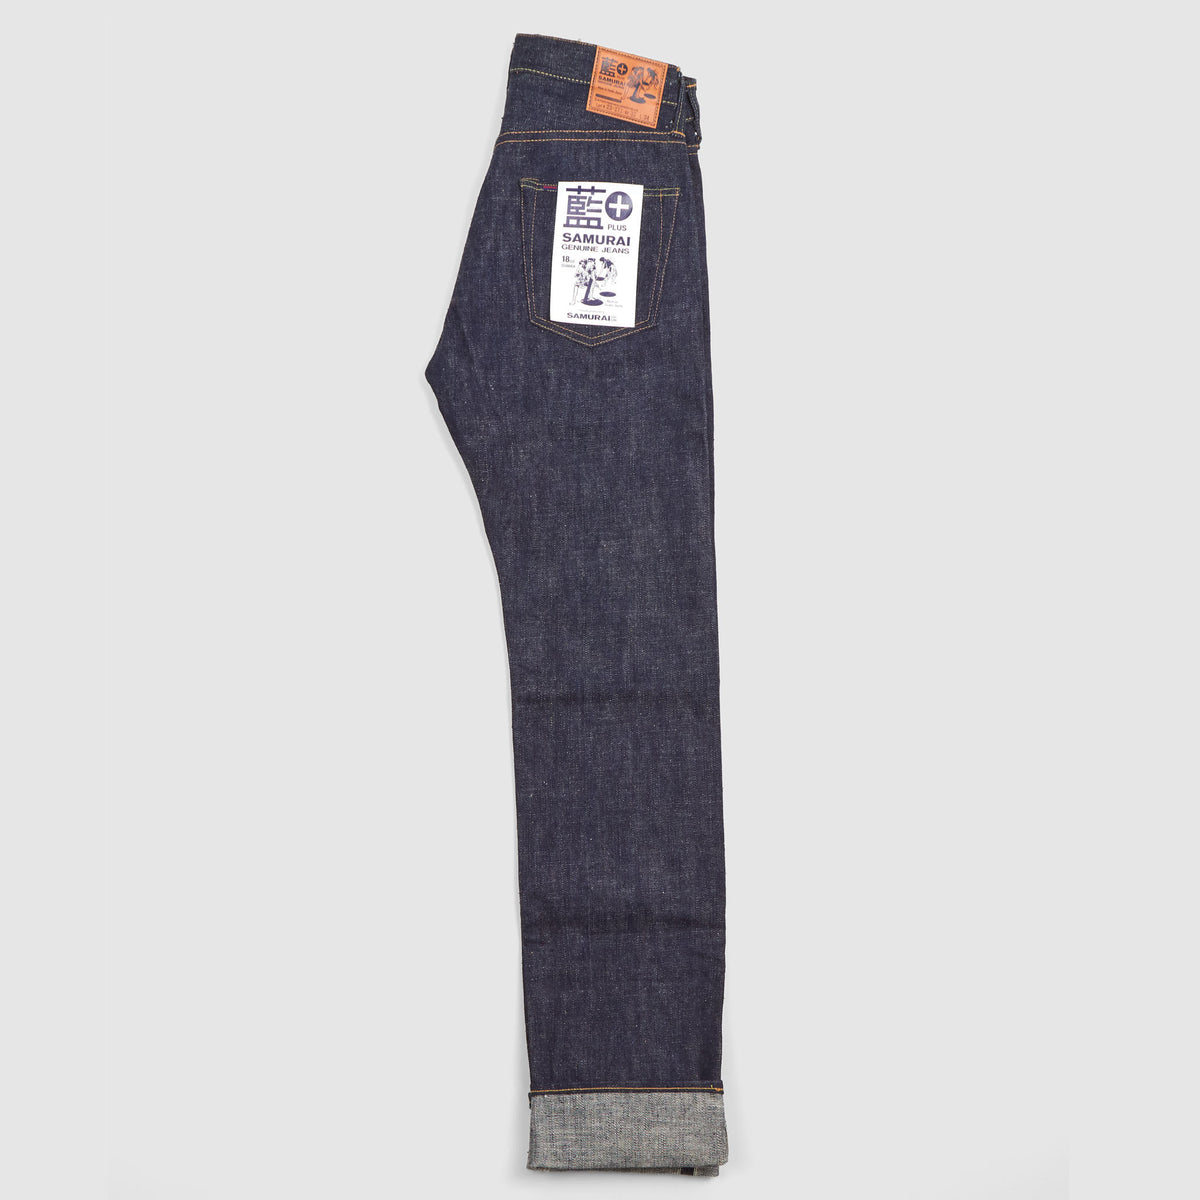 Samurai Jeans 18oz Authentic Indigo Denim